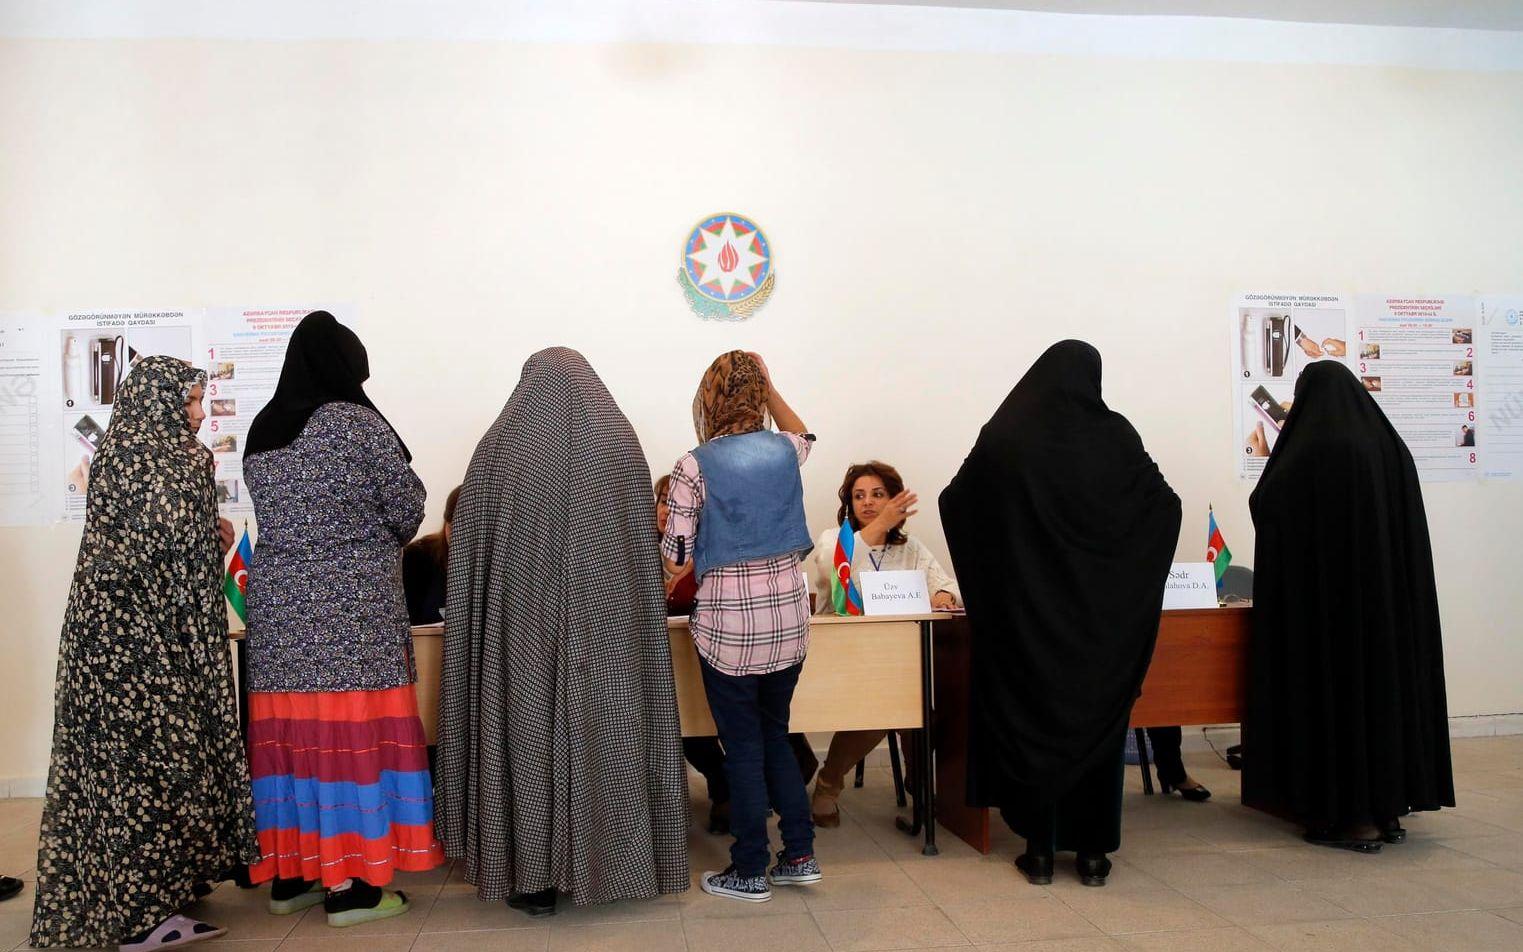 Azerbajdzjan införde kvinnlig rösträtt för kvinnor före Sverige, i en kort frihetstid under 1918 och 1920. Bild: TT